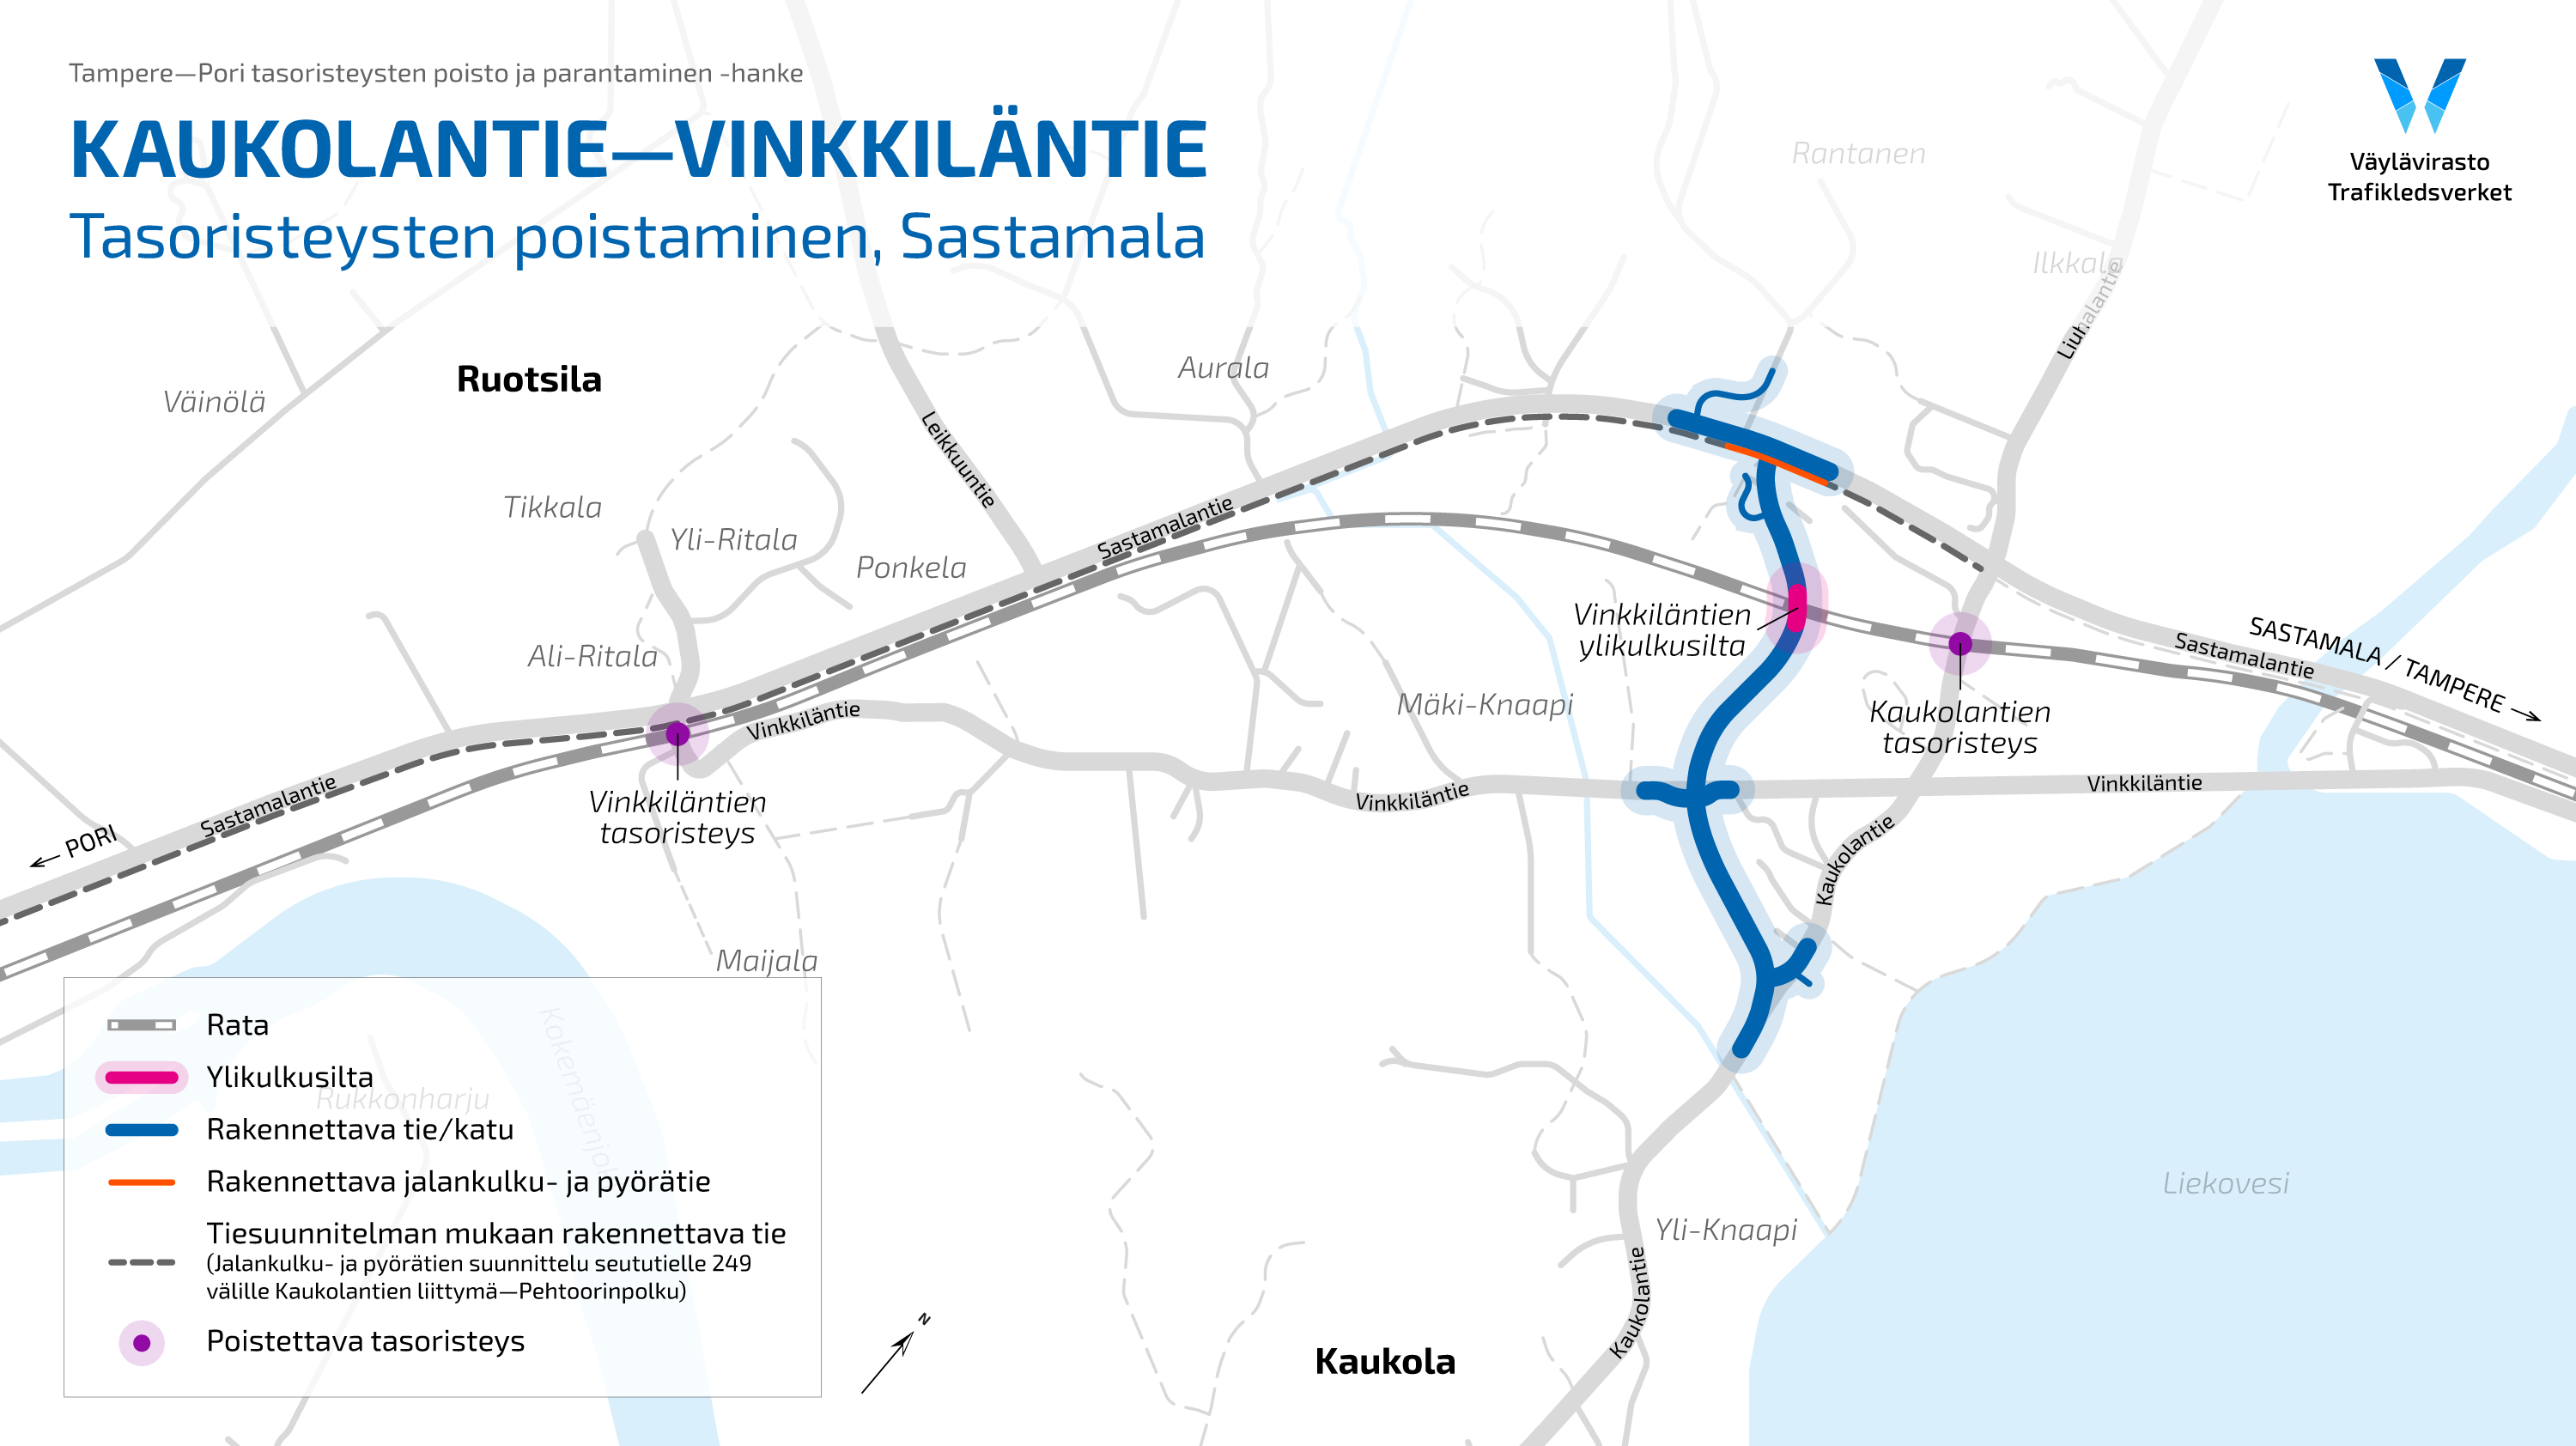 Kaukolantie-Vinkkiläntie kartta, jossa näkyvät poistettavat tasoristeykset ja rakennettava tieosuus Vinkkilän ylilkukusillan kanssa.